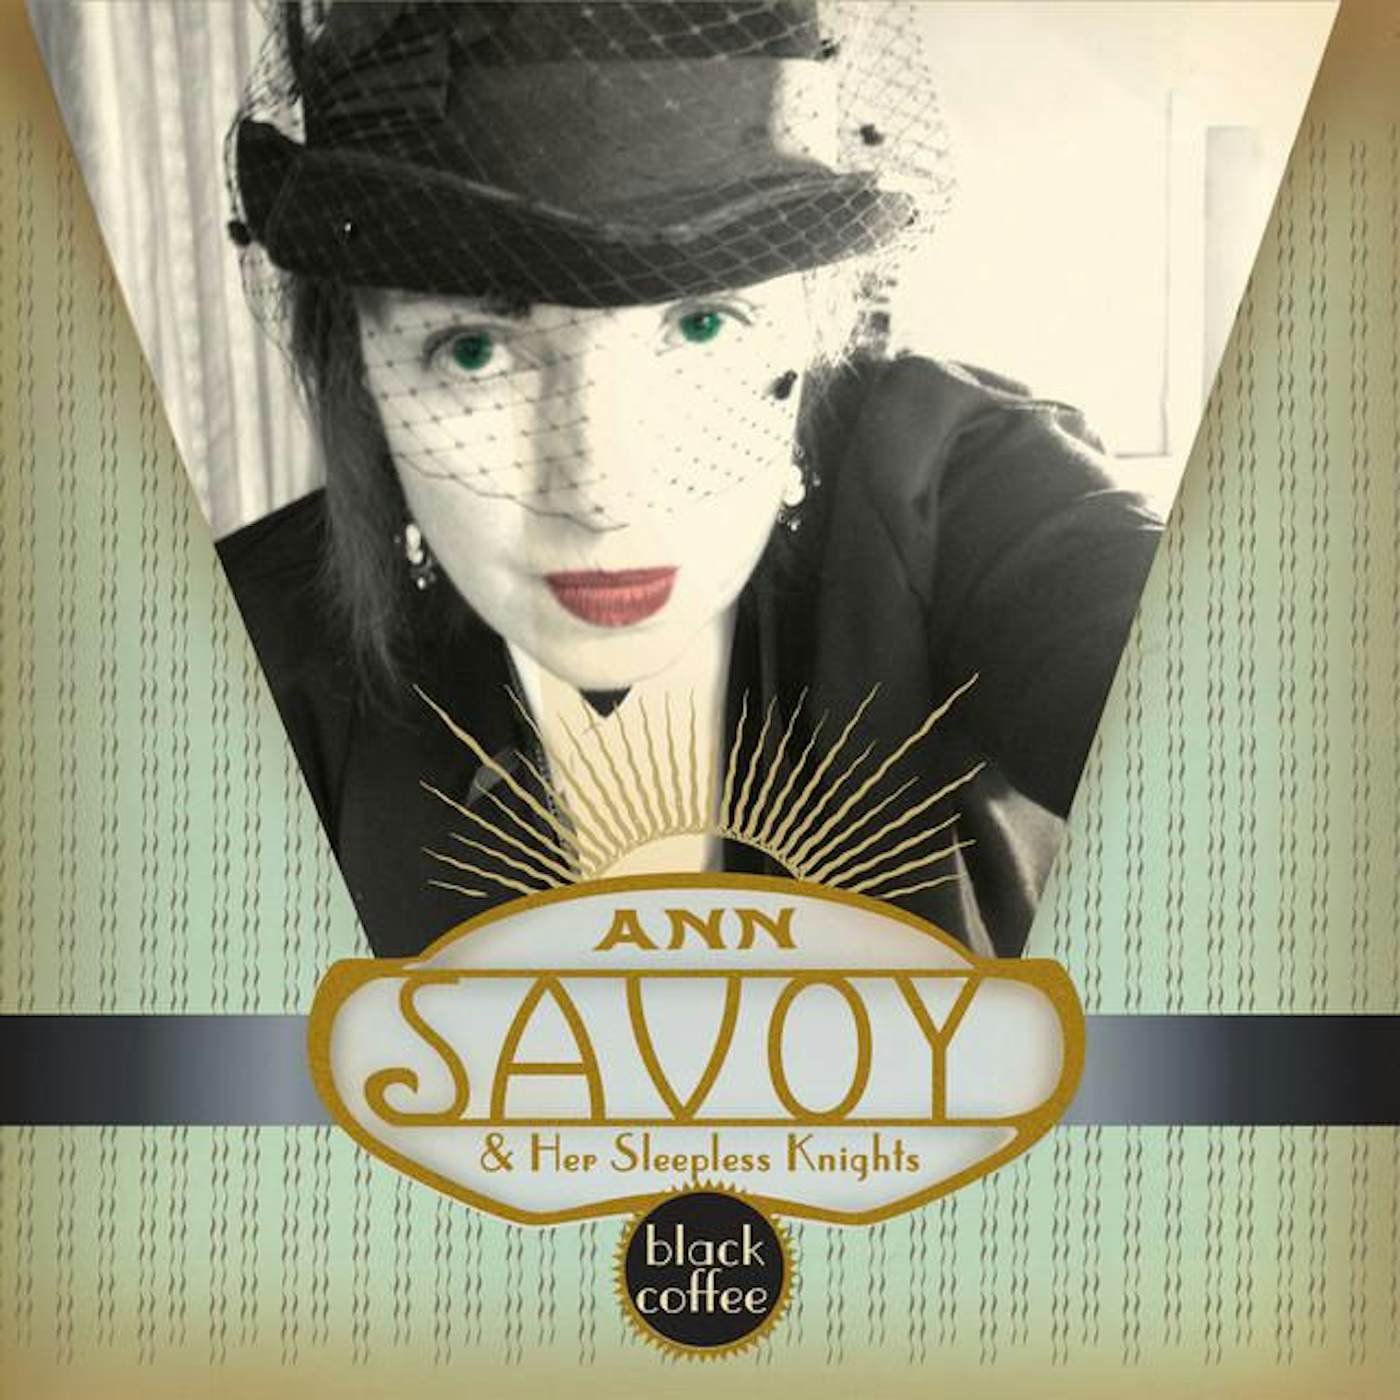 Ann Savoy & Her Sleepless Knights